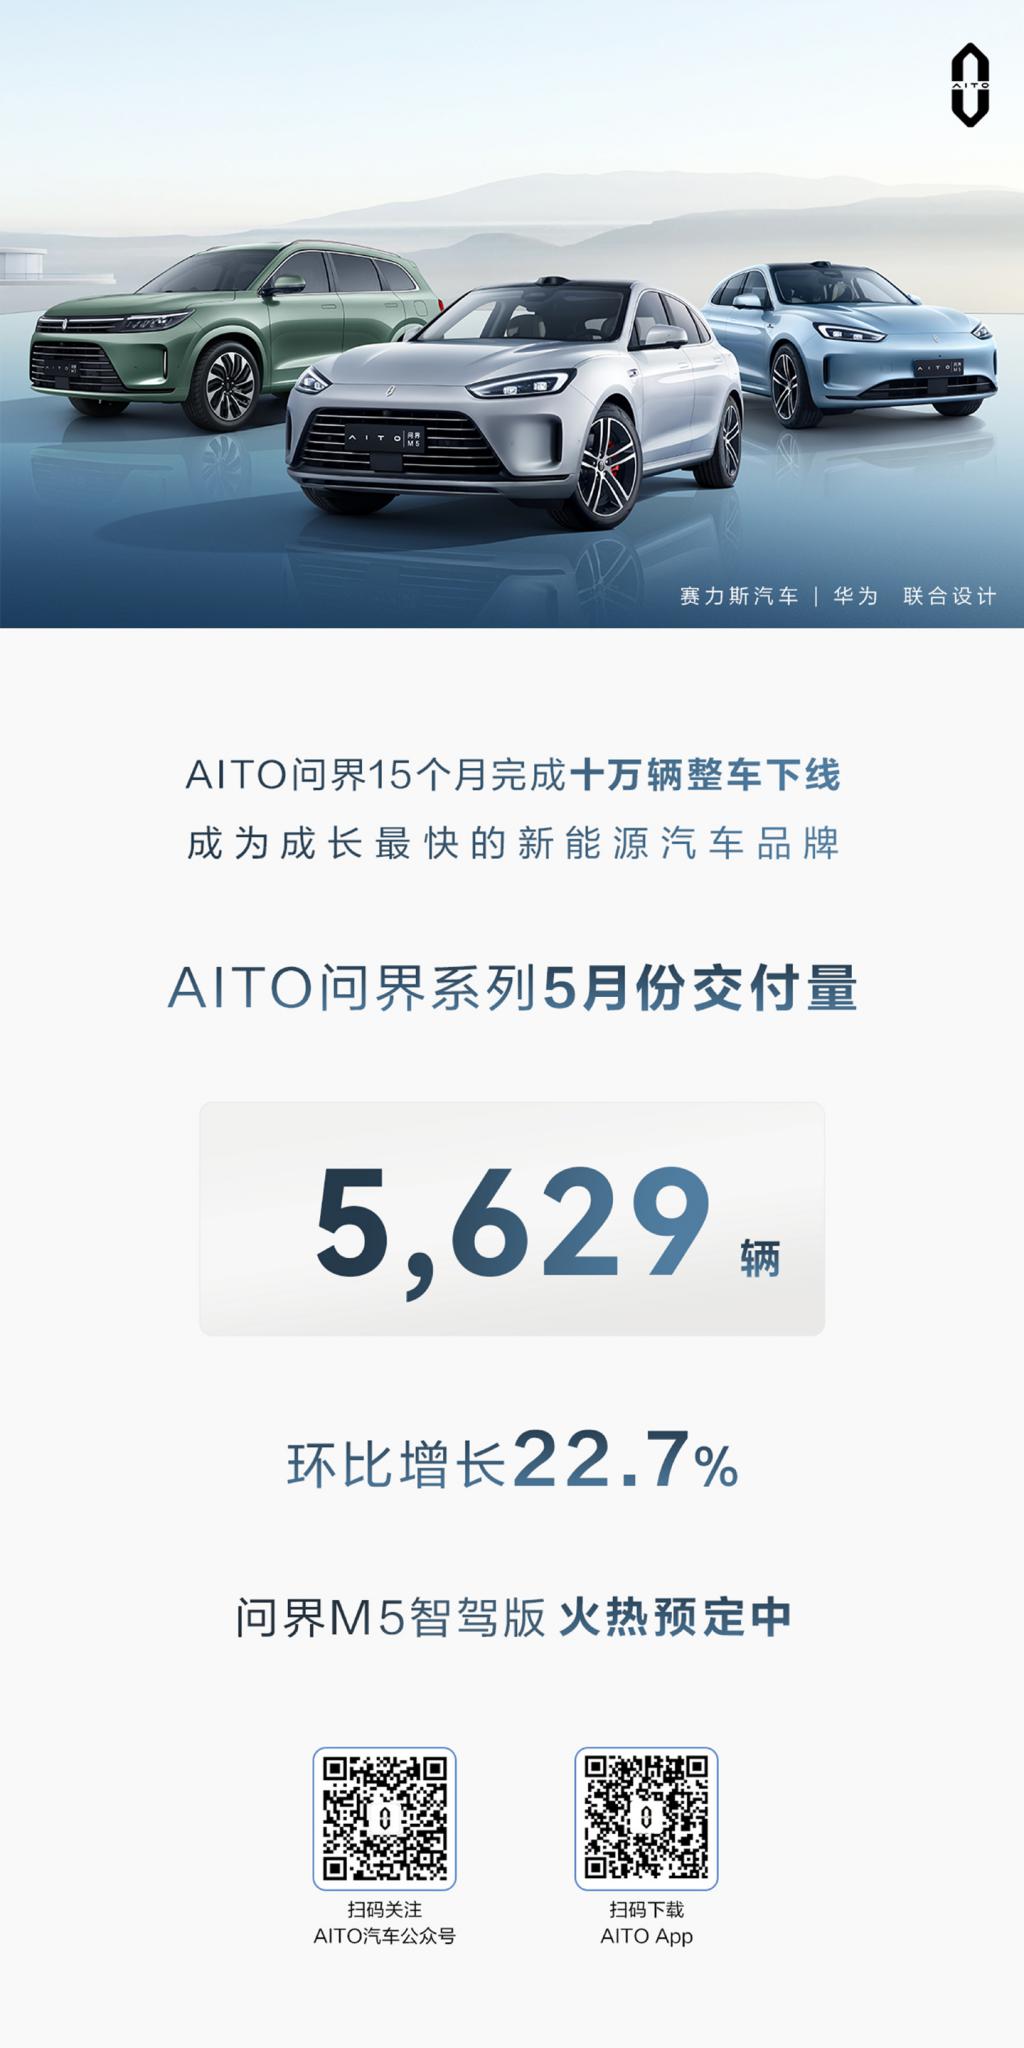 AITO 问界系列 5 月交付 5629 辆新车，环比增长 22.7%